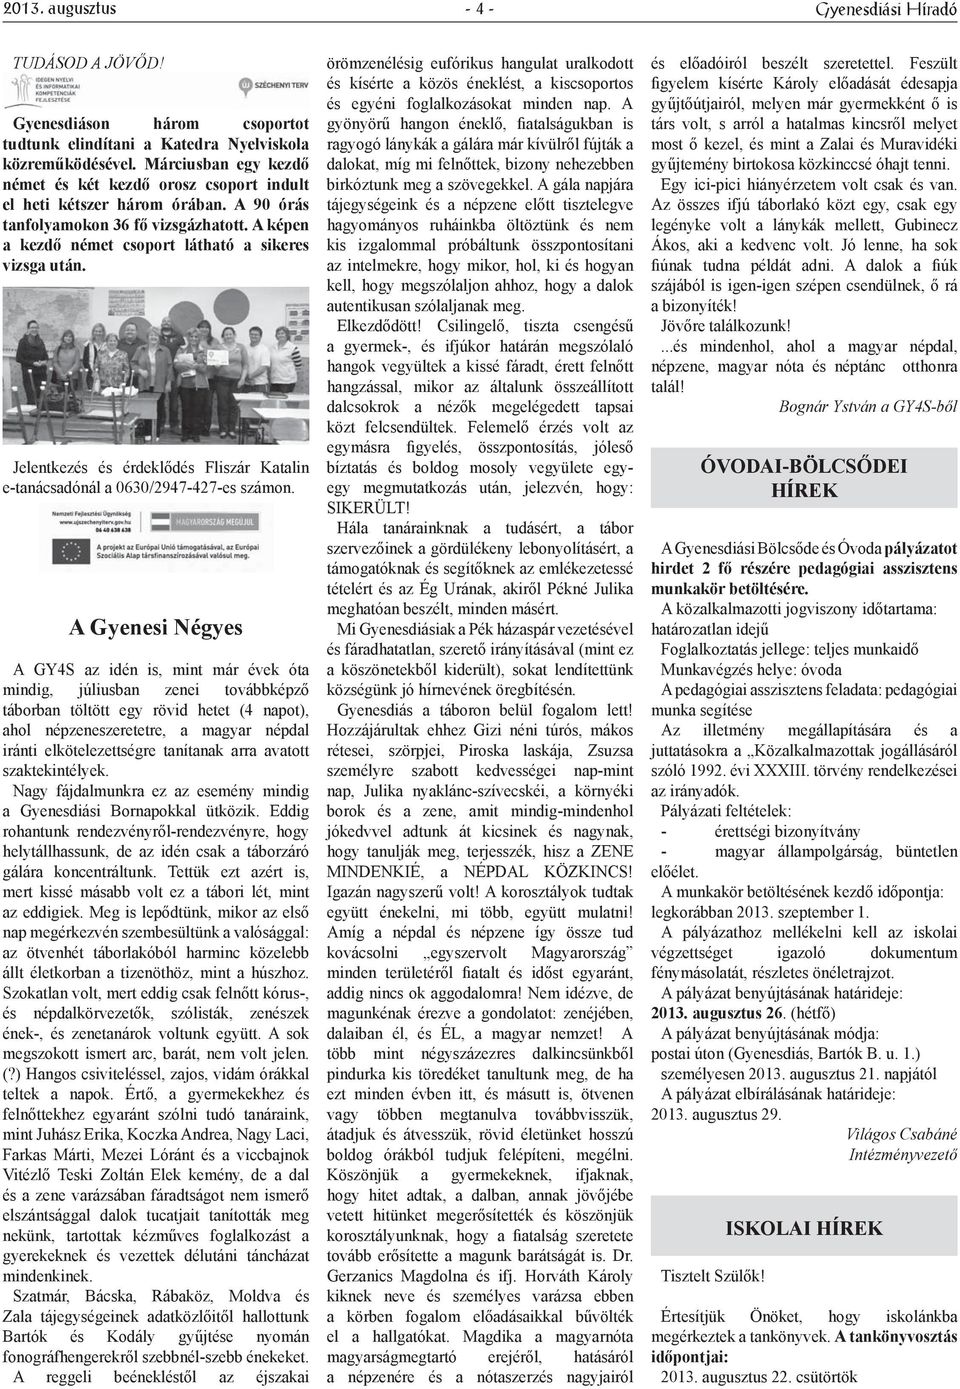 Jelentkezés és érdeklődés Fliszár Katalin e-tanácsadónál a 0630/2947-427-es számon.